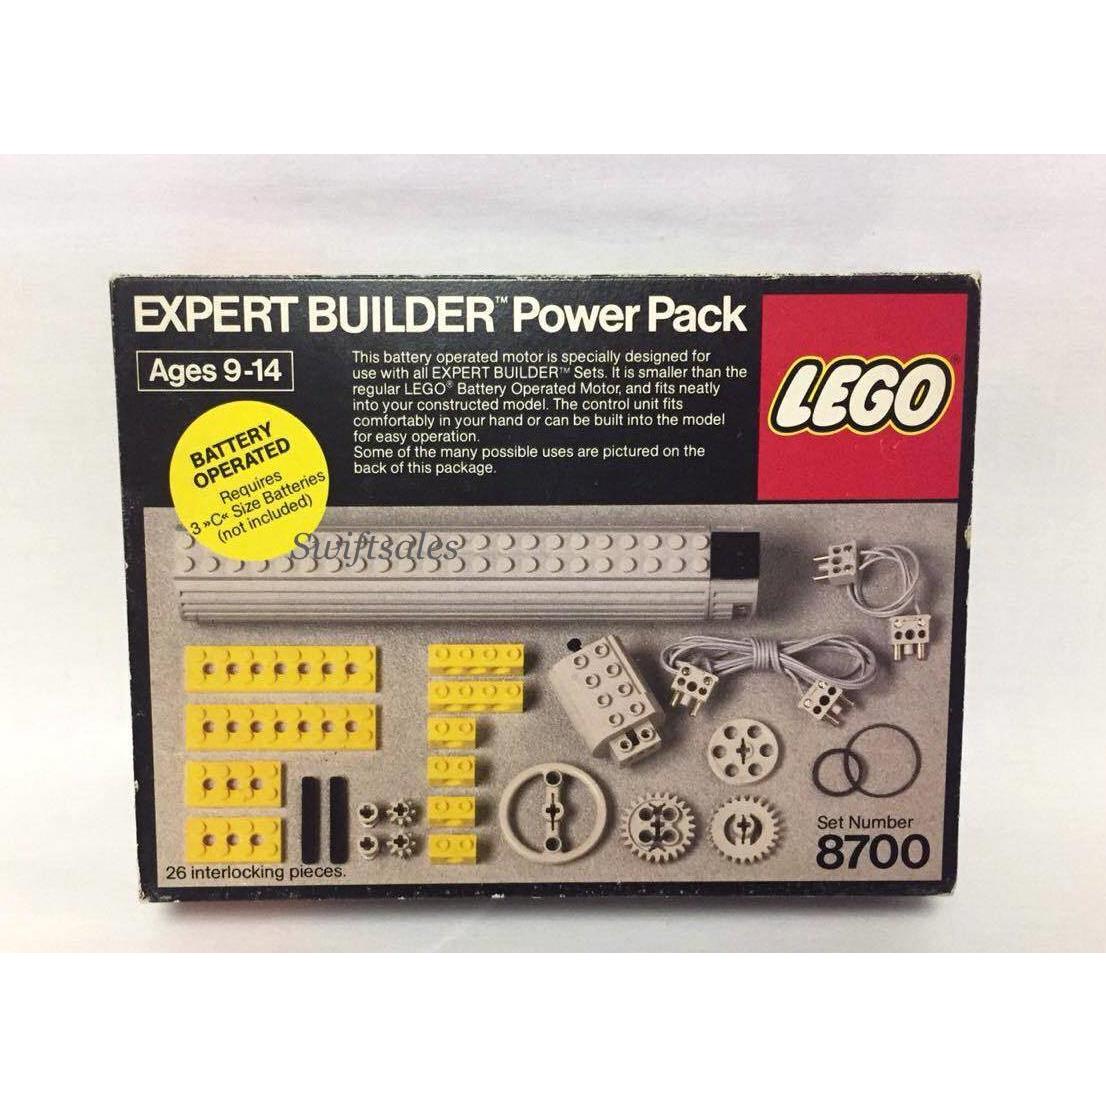 Lego 8700 - Expert Builder Power Pack - 1982 Vintage Misb Set